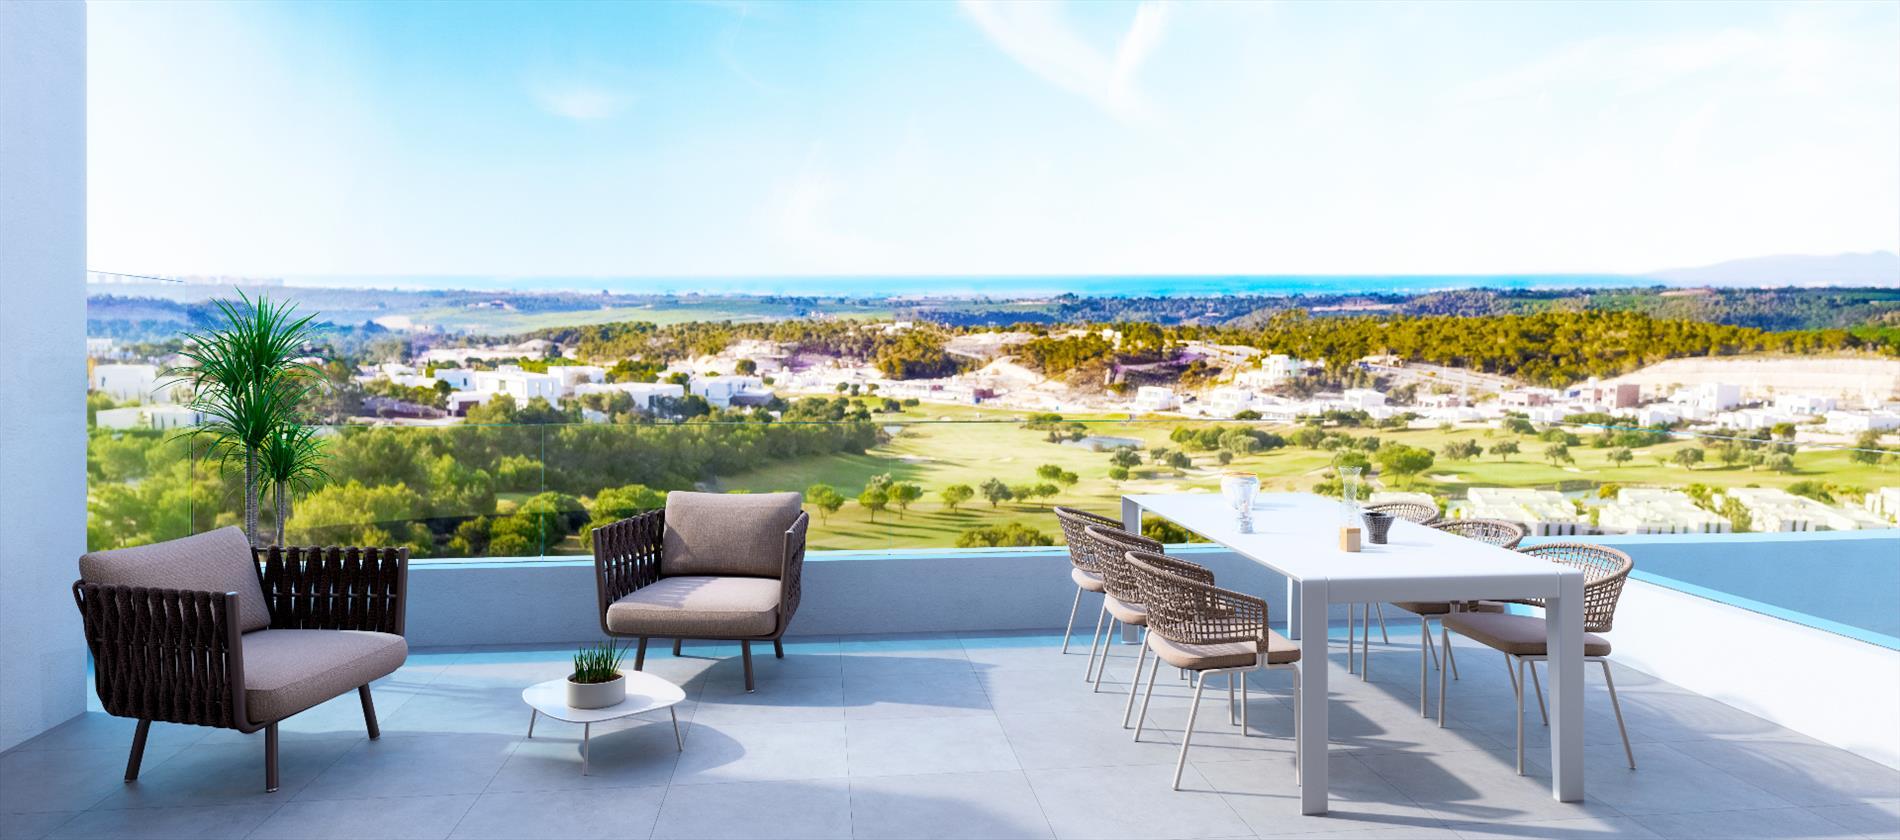 NOG SLECHTS ENKELE  TE KOOP !!!     Luxe appartementen met Golf en Zeezicht in Las Colinas vanaf € 459.000 